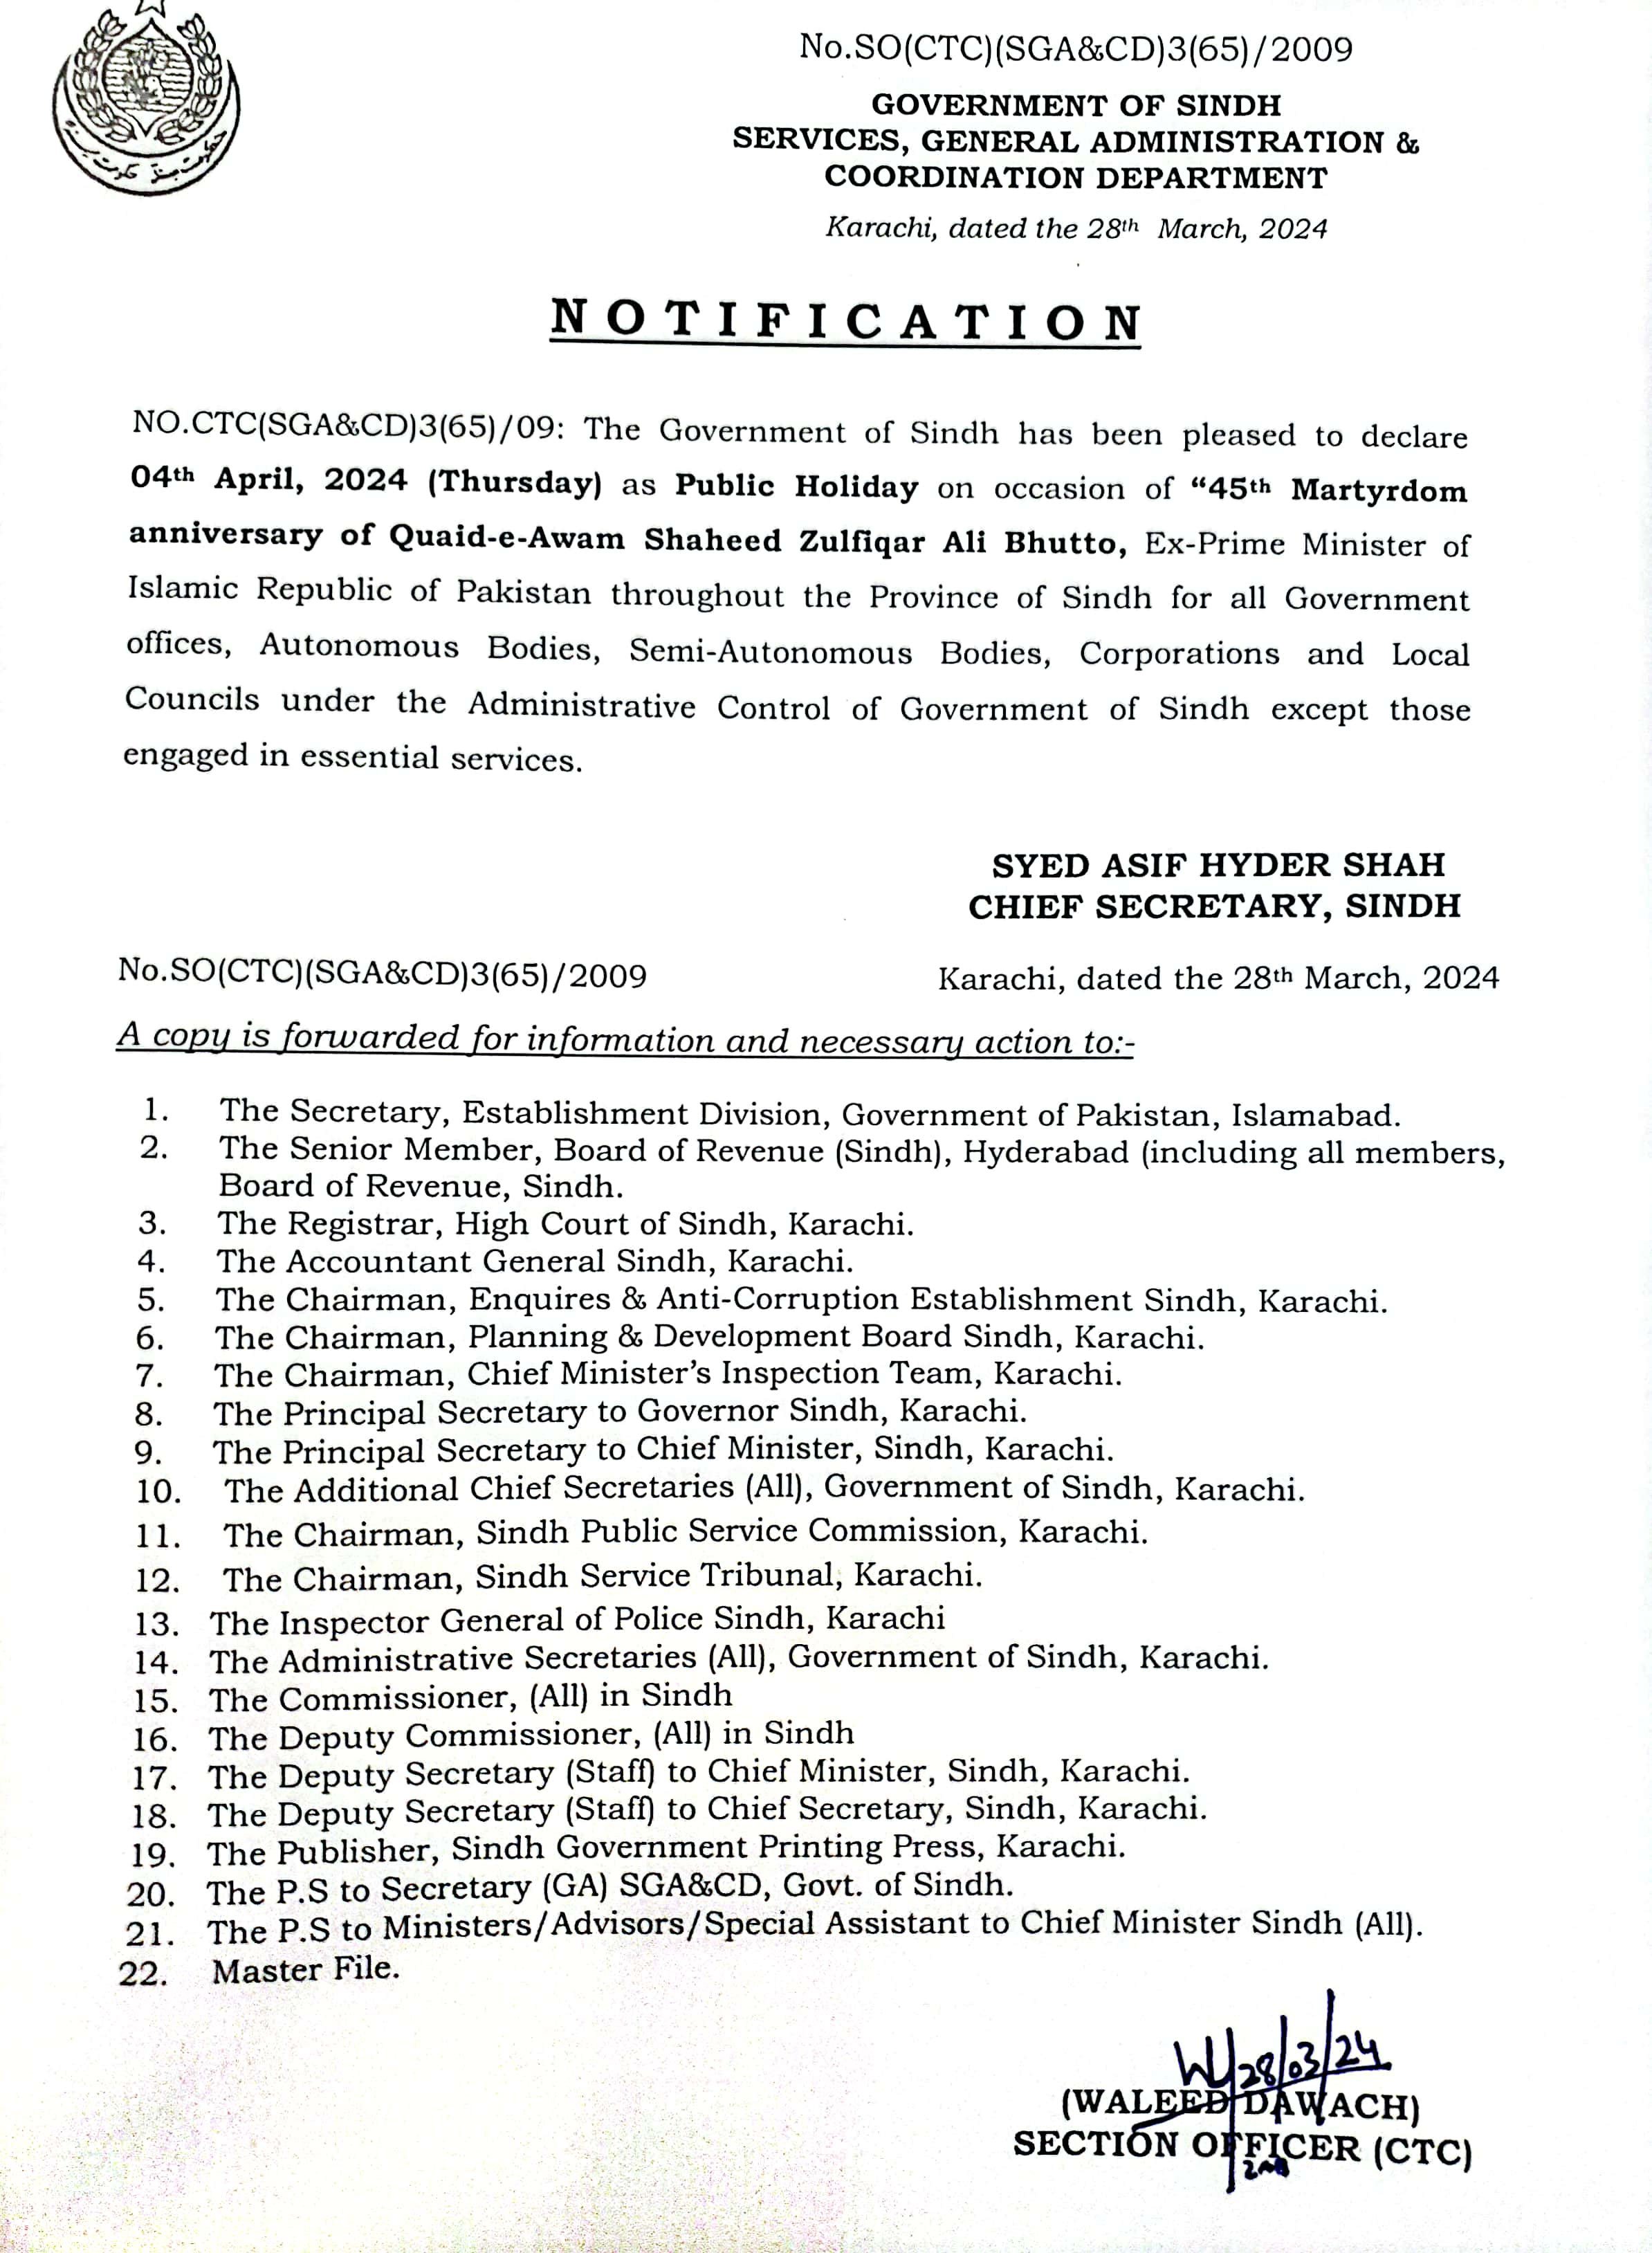 Sindh govt announces public holiday on April 4